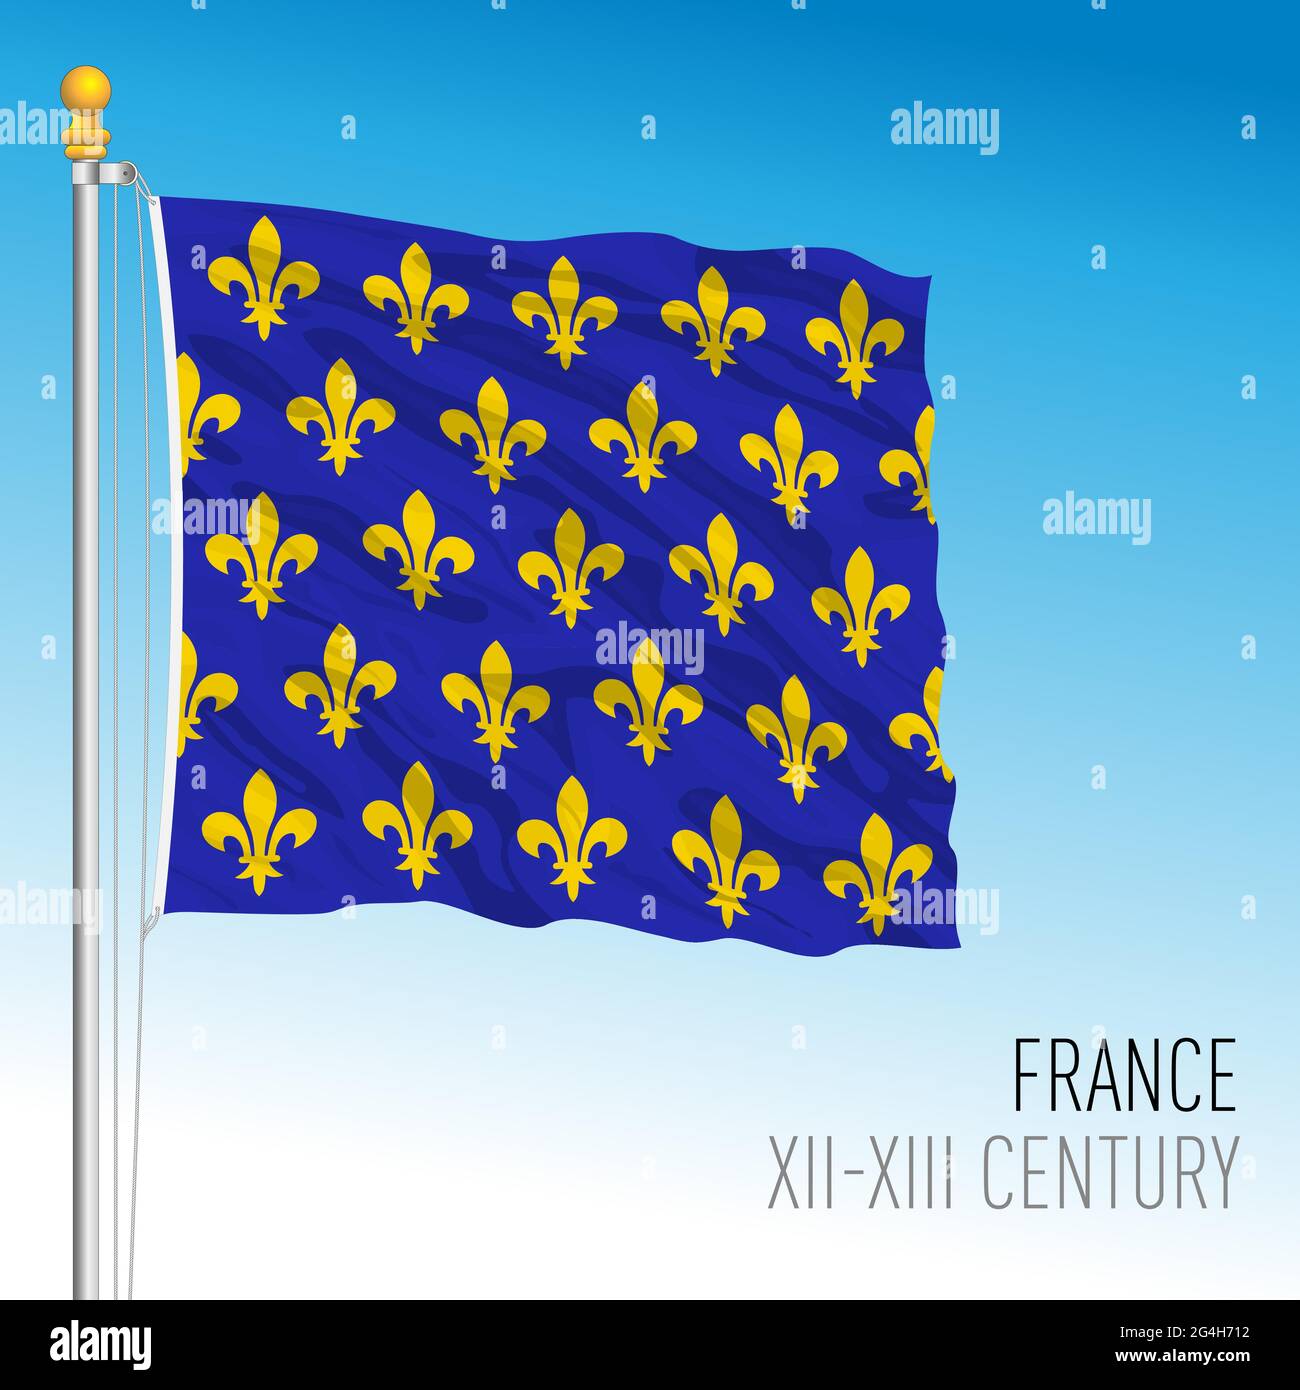 Französische historische Flagge, Frankreich, XII XIII Jahrhundert,  Vektorgrafik Stock-Vektorgrafik - Alamy